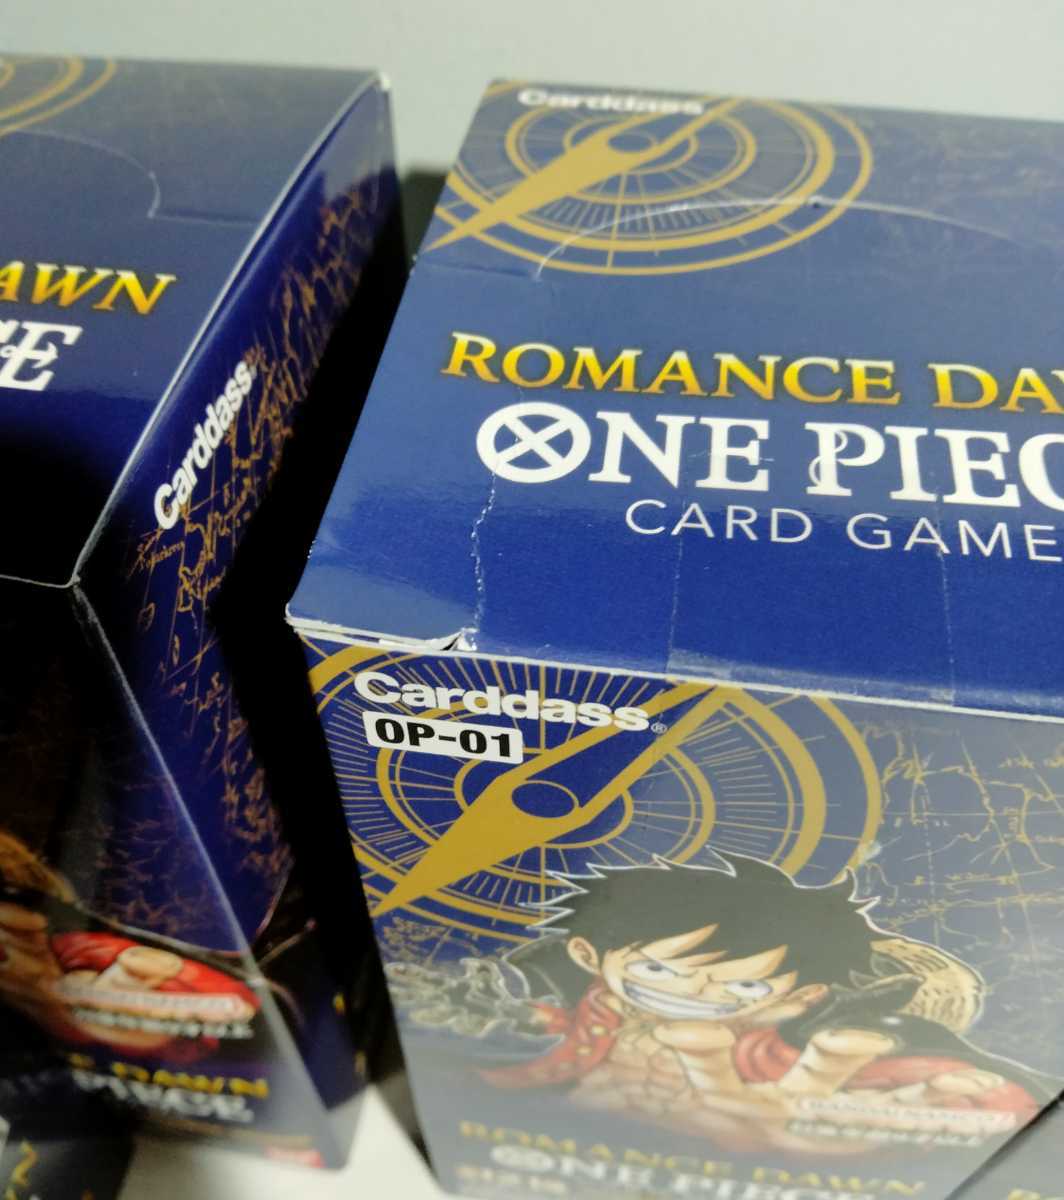 テープ付き 未サーチ品 ワンピース カードゲーム ROMANCE DAWN 